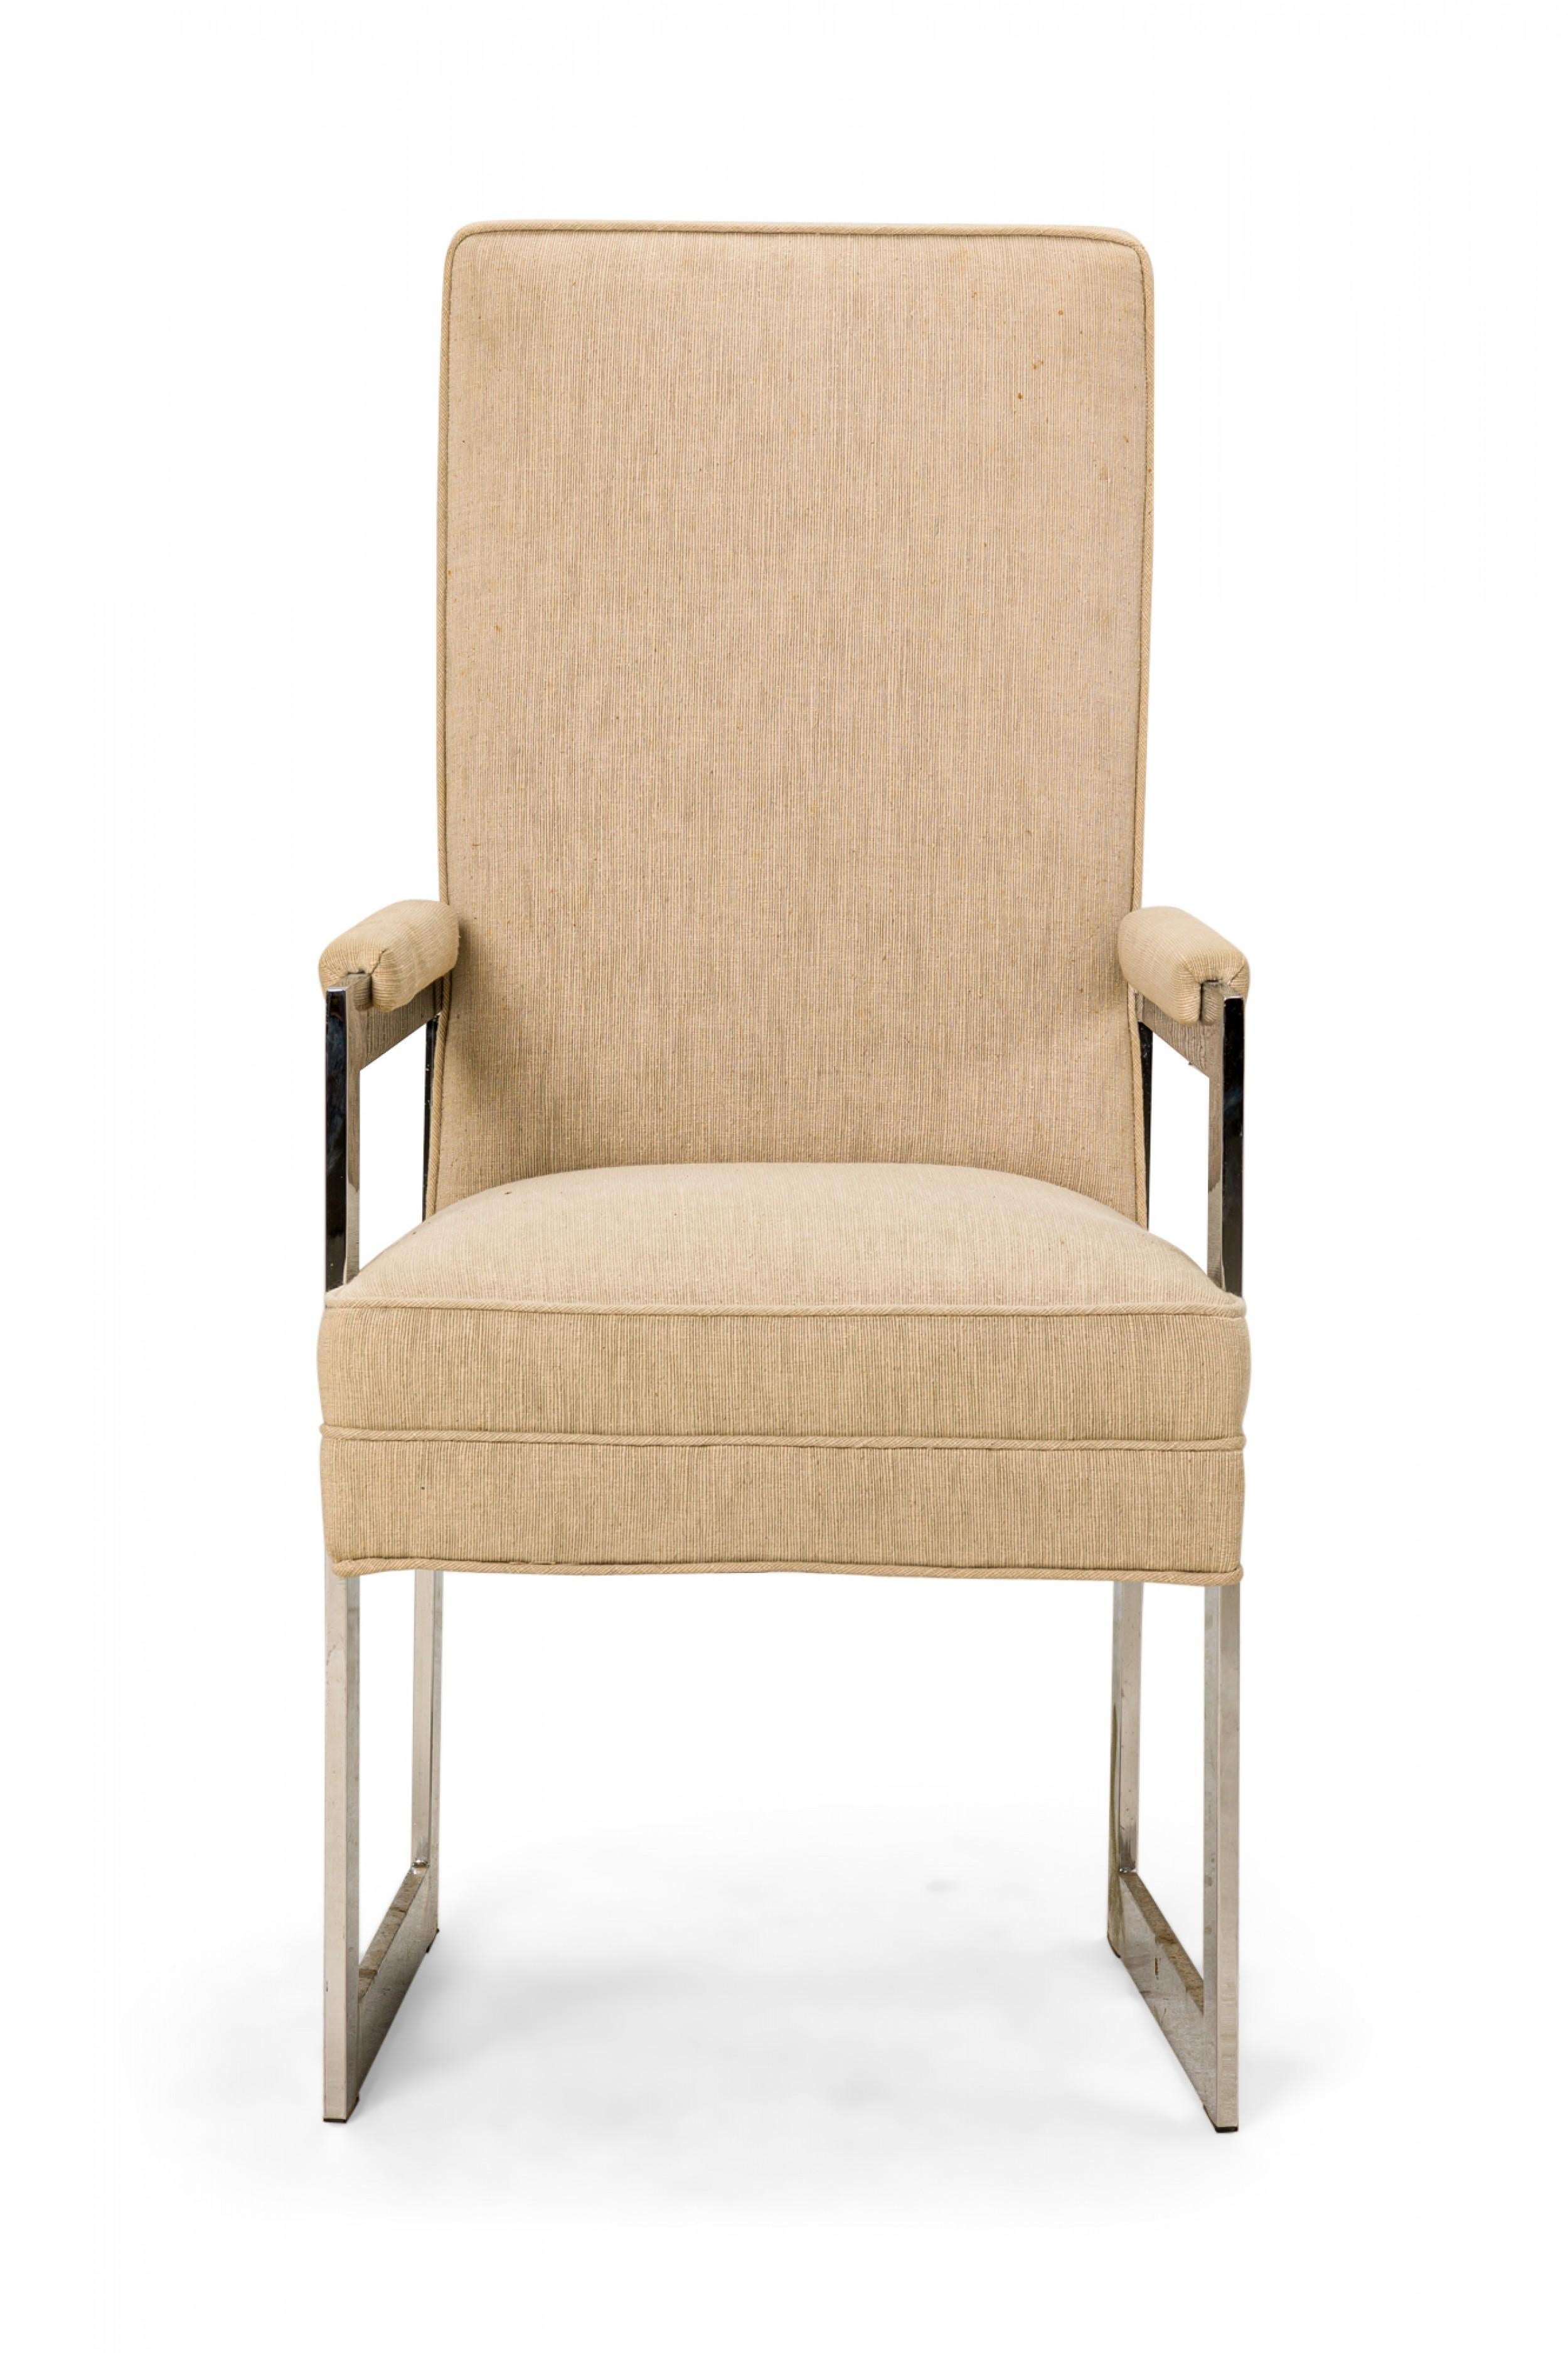 SET aus 8 amerikanischen Mid-Century-Esszimmerstühlen, bestehend aus zwei Sesseln und sechs Beistellstühlen, die mit beigefarbenem Stoff gepolstert und mit passenden Sitzbezügen versehen sind und auf quadratischen, polierten Aluminiumbeinen ruhen